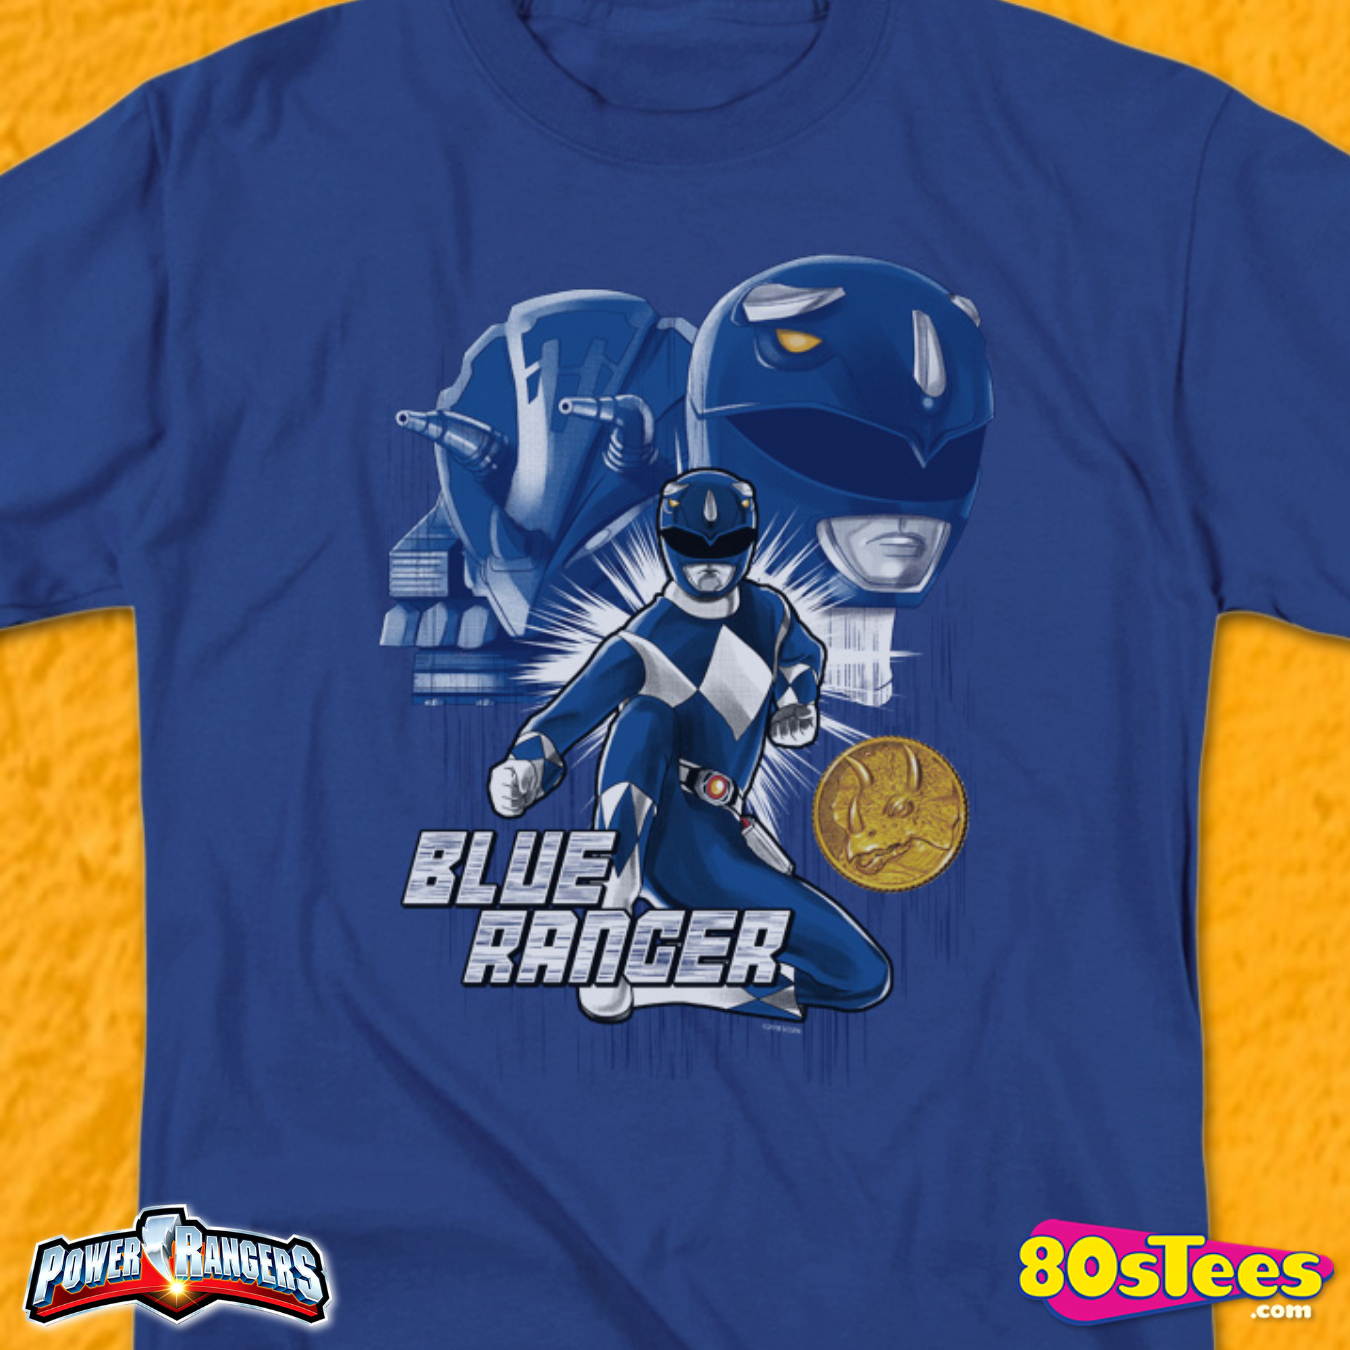 blue ranger shirt